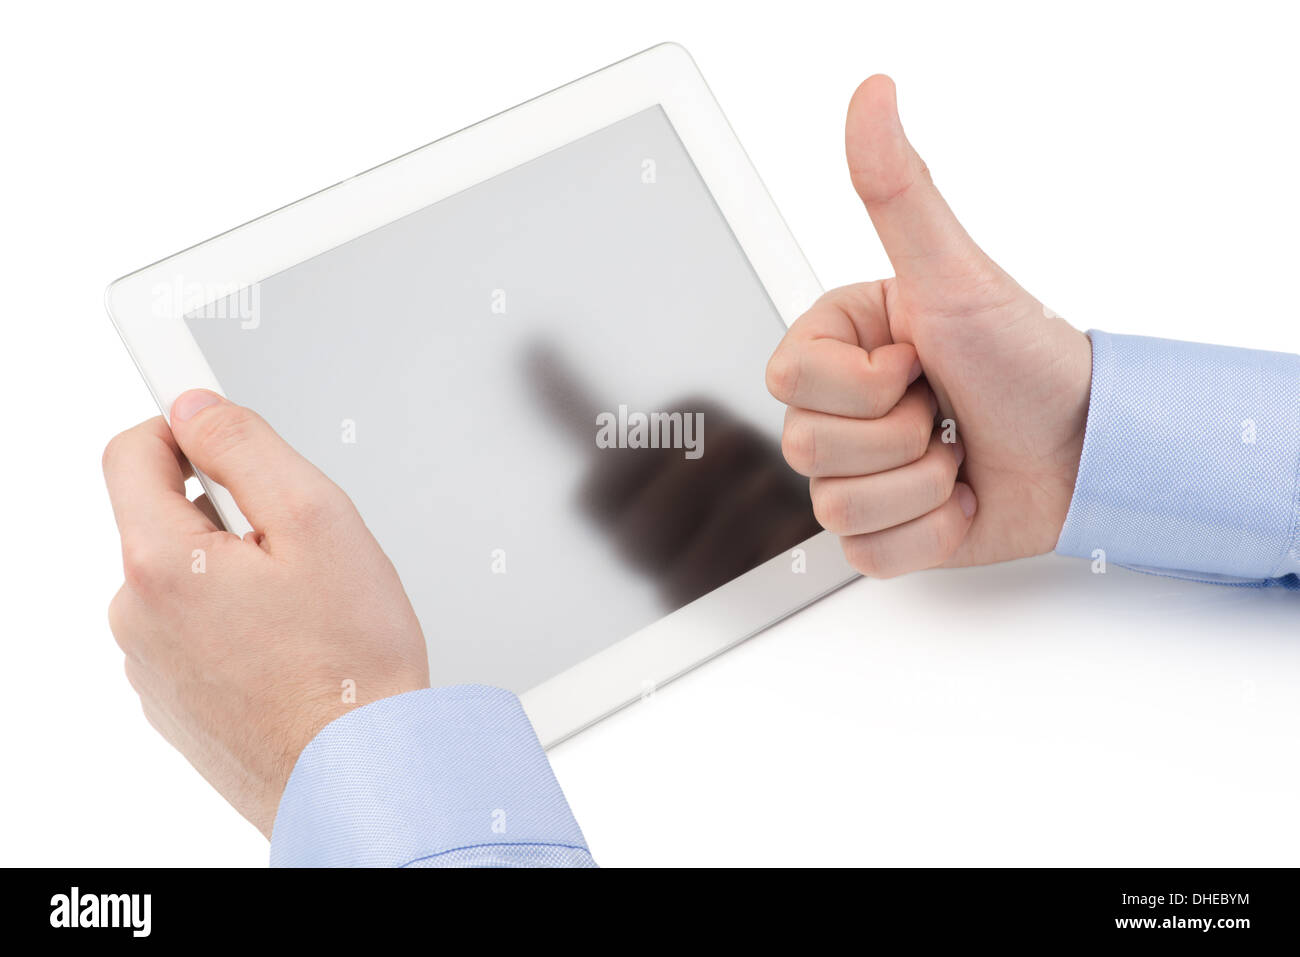 Man's hand holding a tablet computer et l'autre main showing Thumbs up geste sur un fond blanc. Banque D'Images